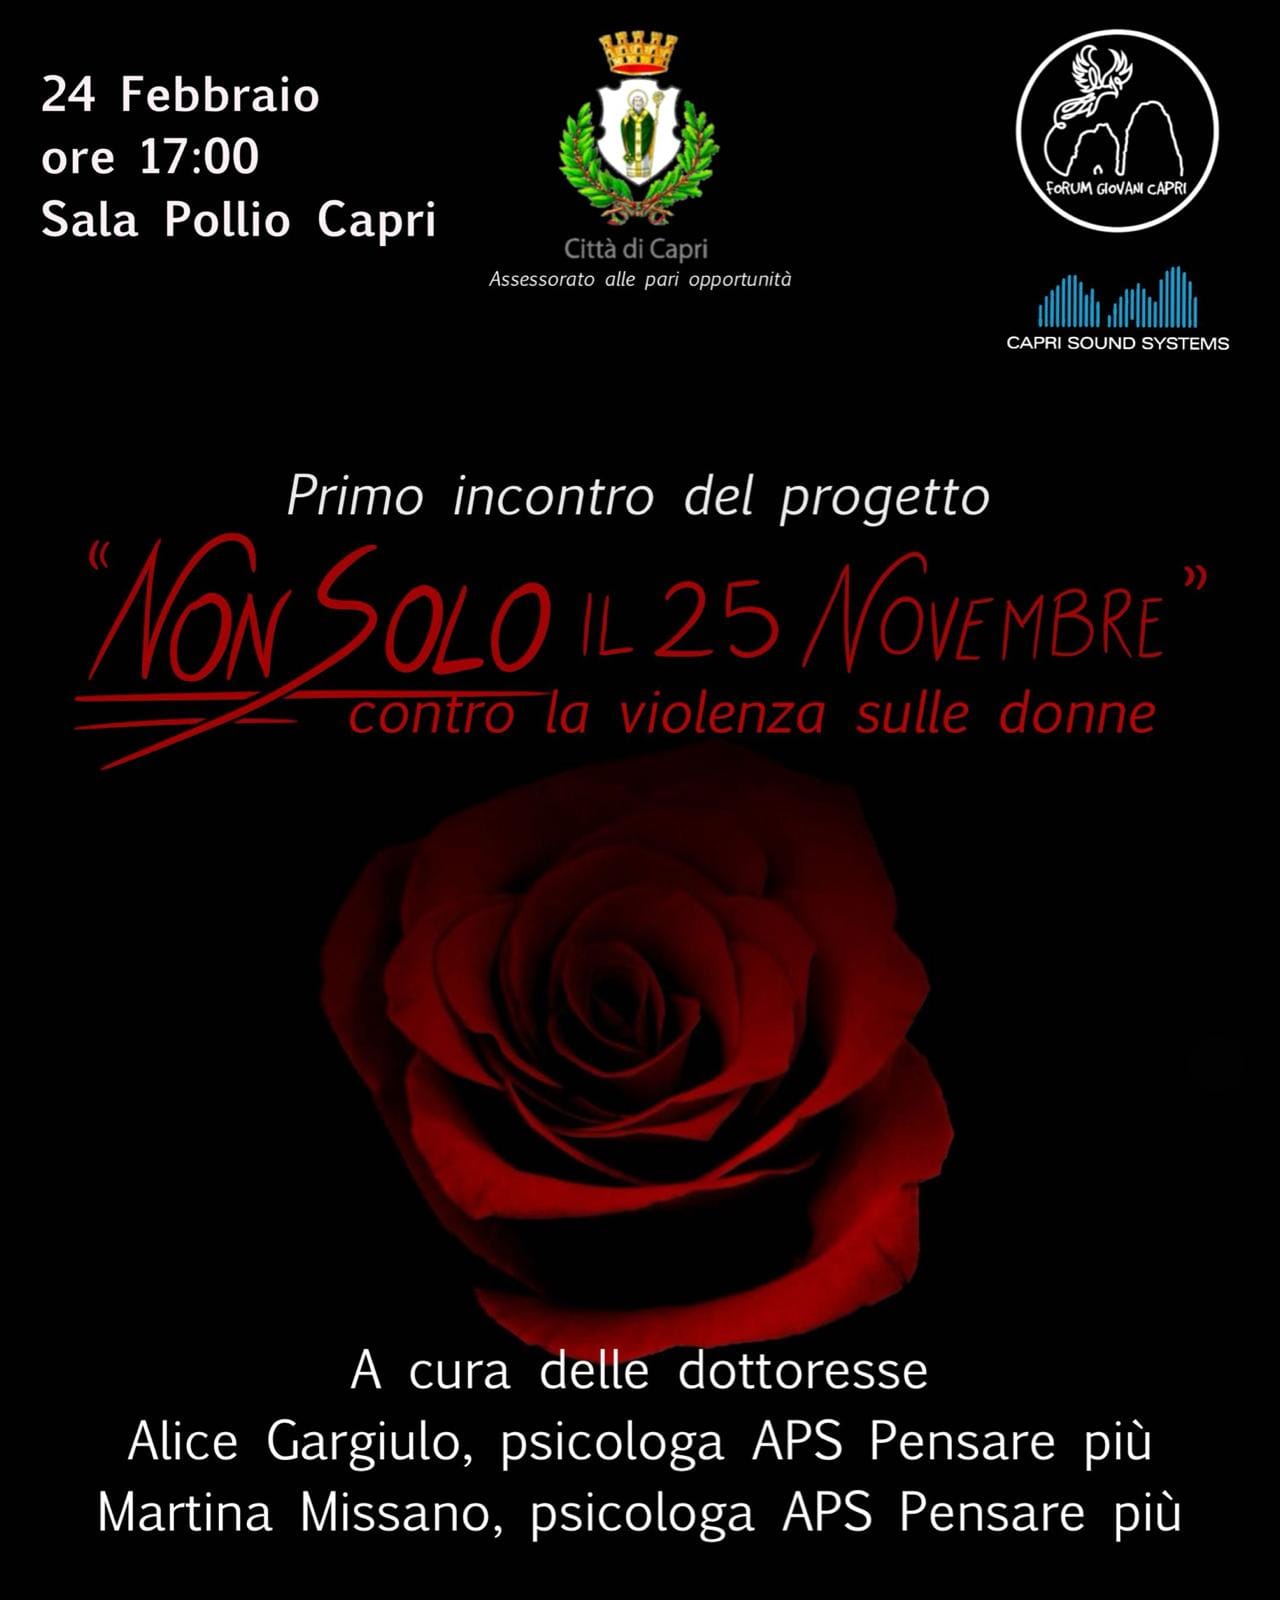 Primo incontro del progetto “Non solo il 25 novembre” contro la violenza sulle donne